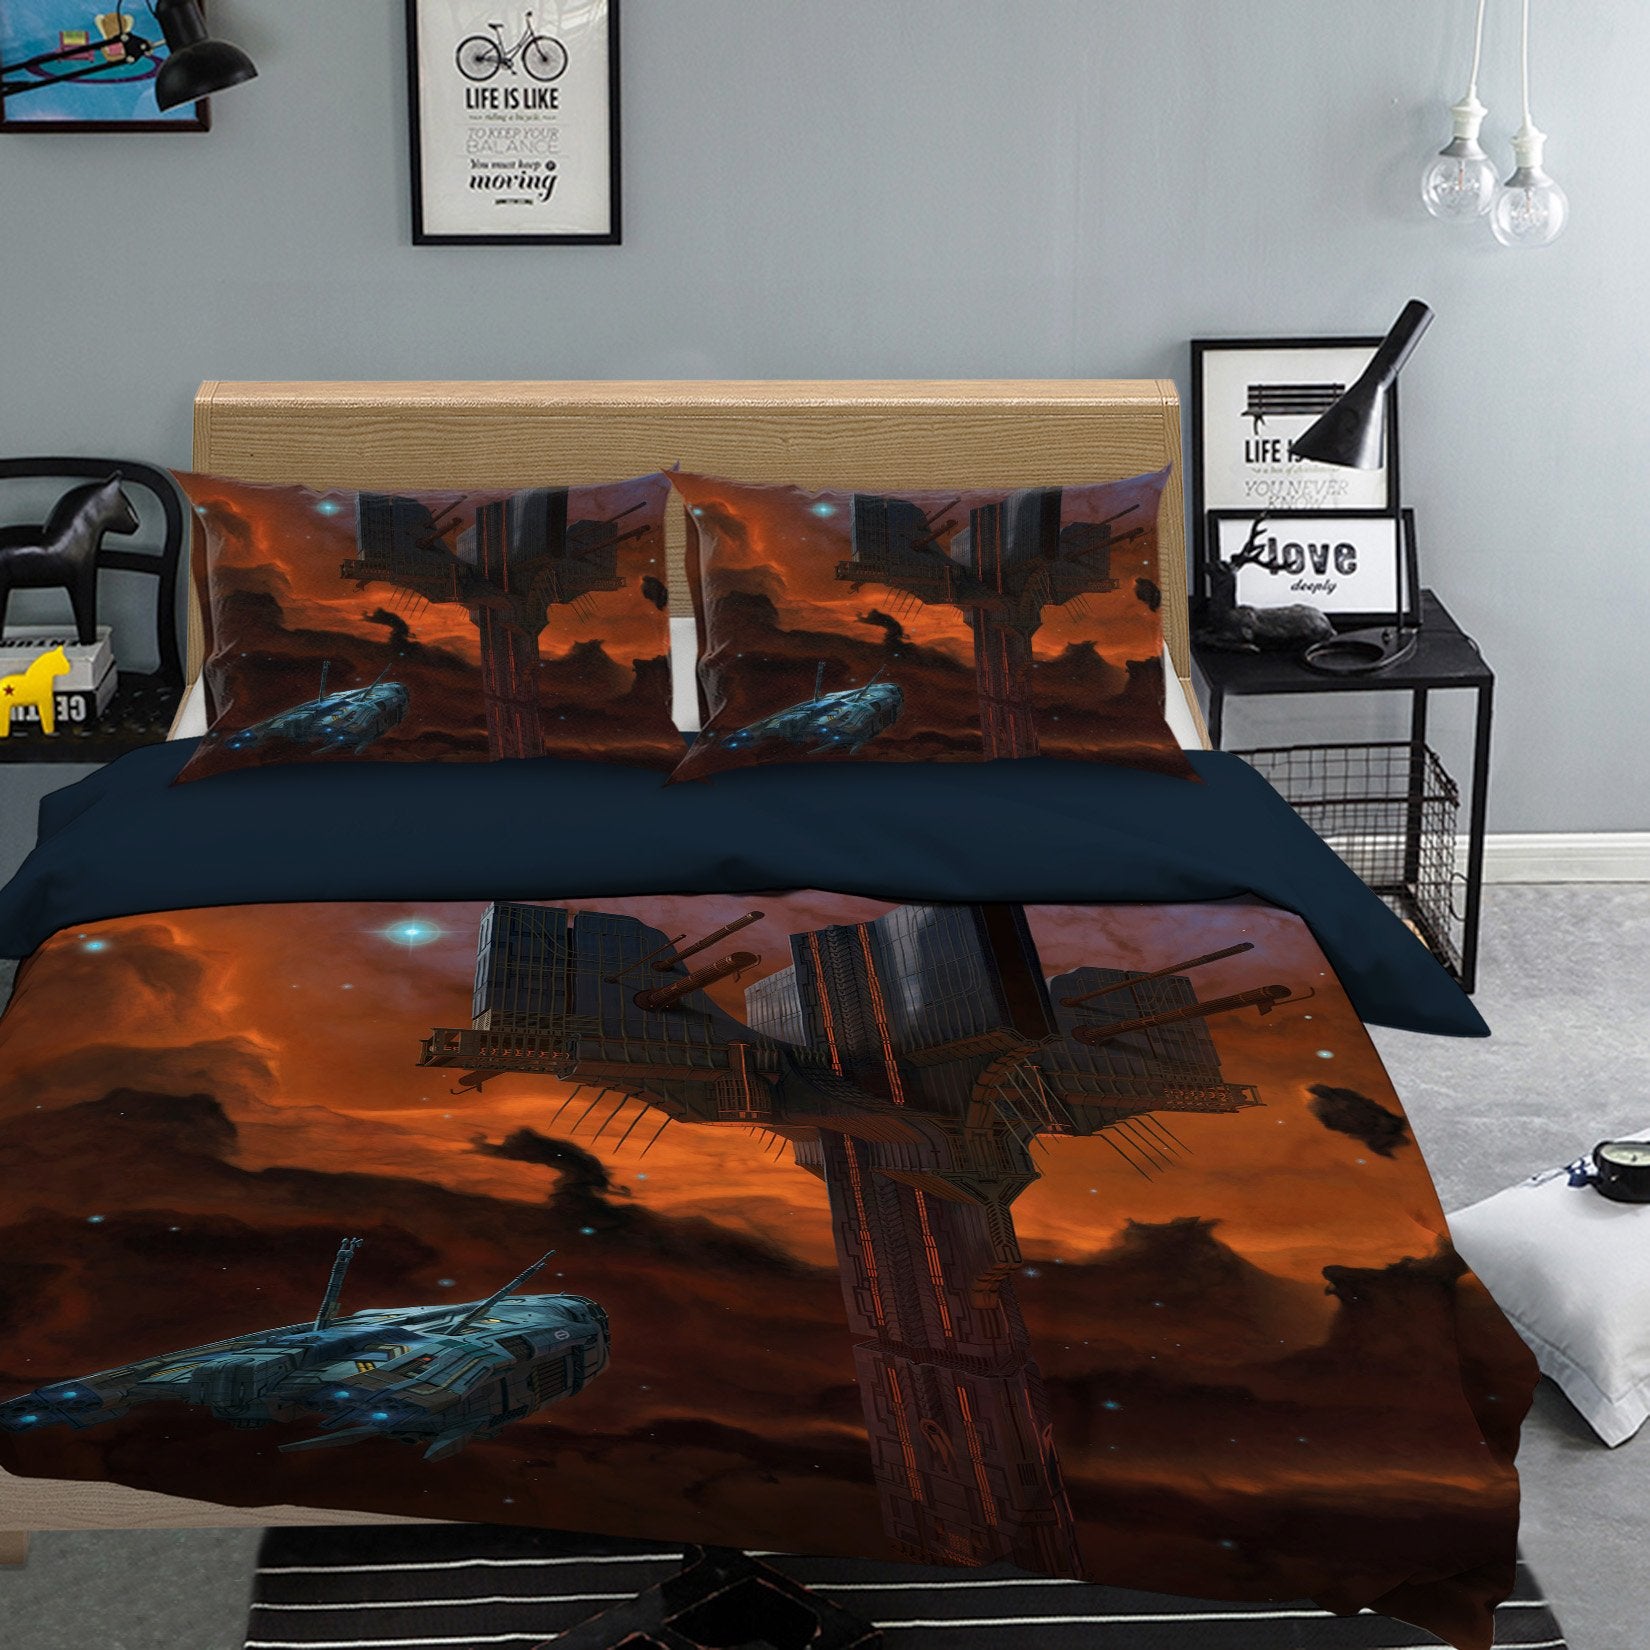 3D Alien Artifact 2108 Bed Pillowcases Quilt Exclusive Designer Vincent Quiet Covers AJ Creativity Home 